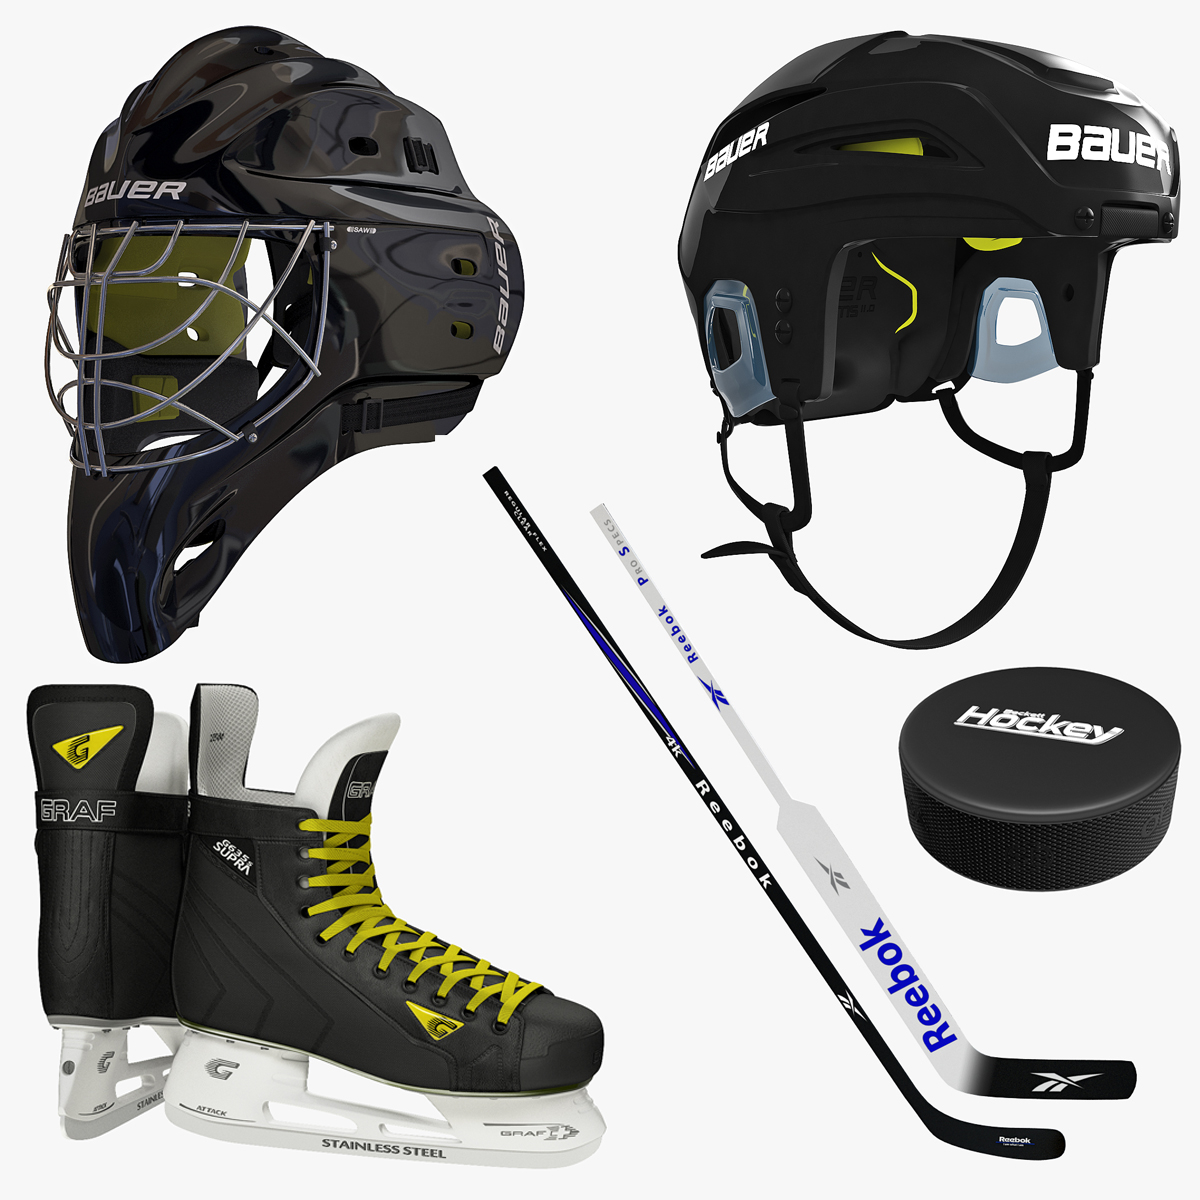 IceHockey Helmets Skates Sticsk Ab23e888 C9e4 48f5 B4eb E81aec3f6d4cZoom 